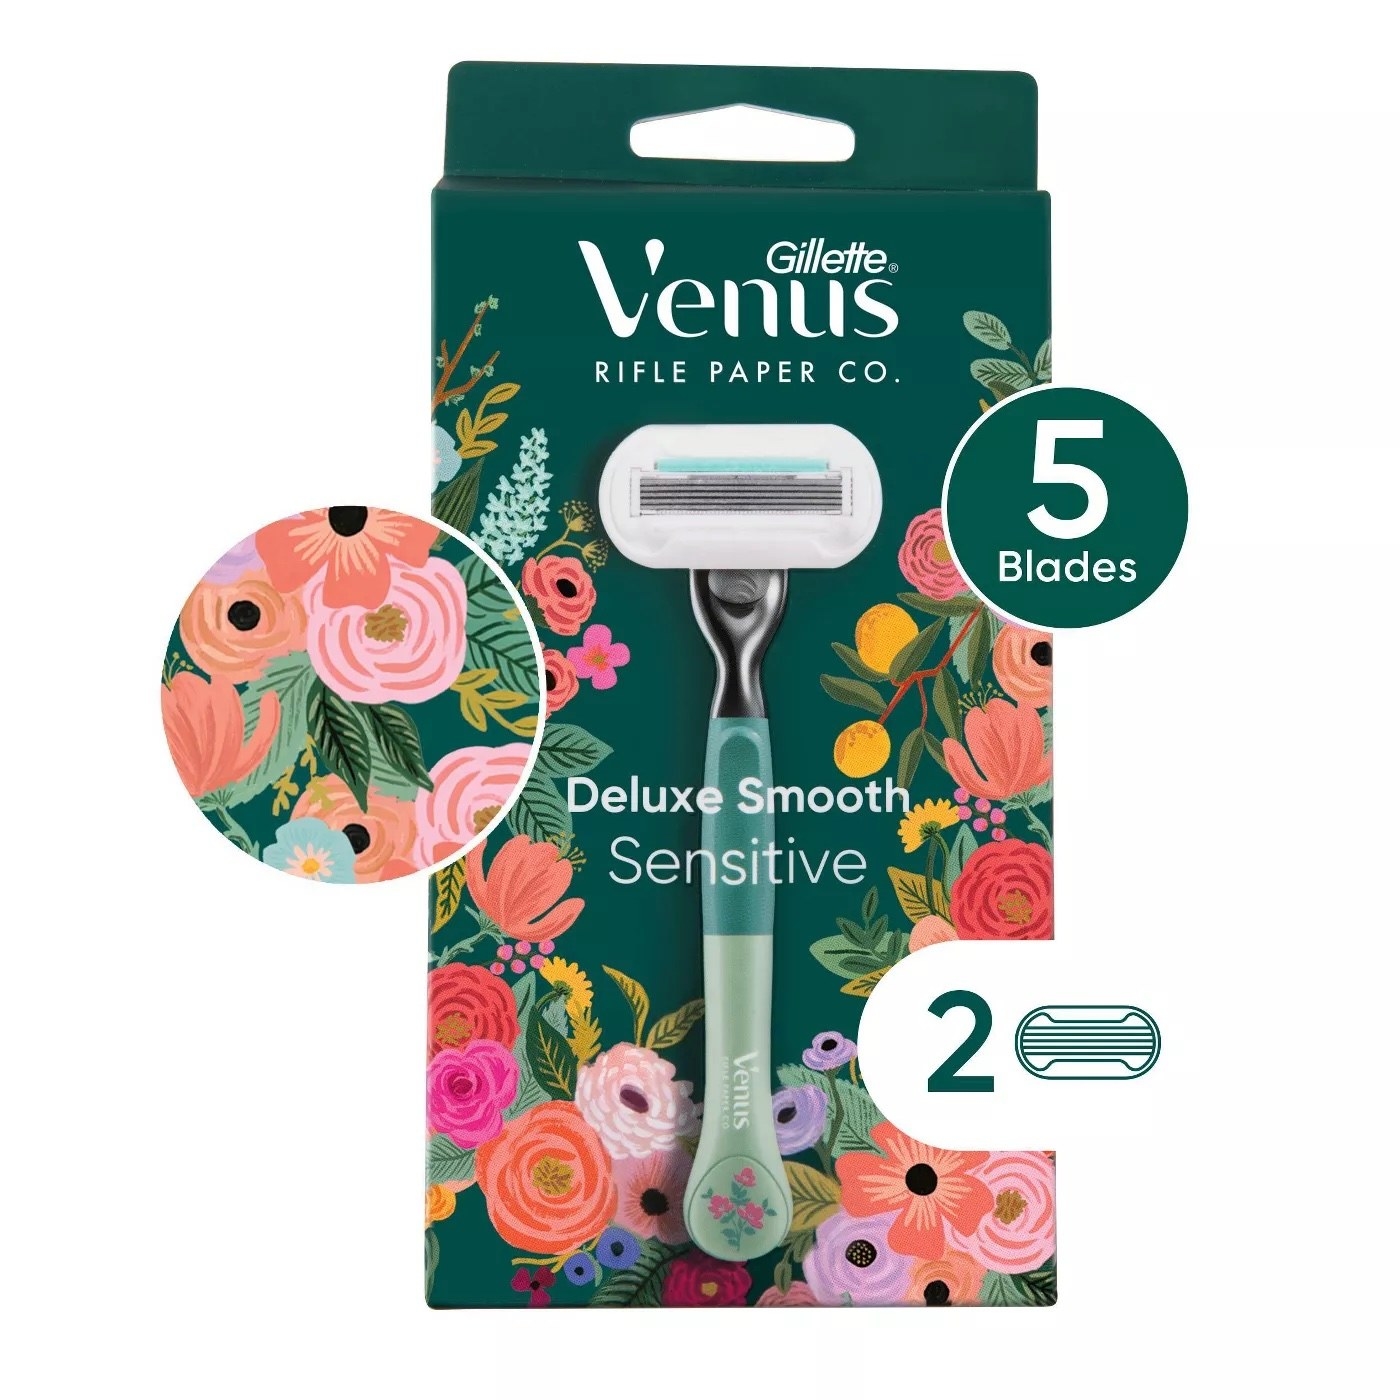 The Venus razor in its packaging